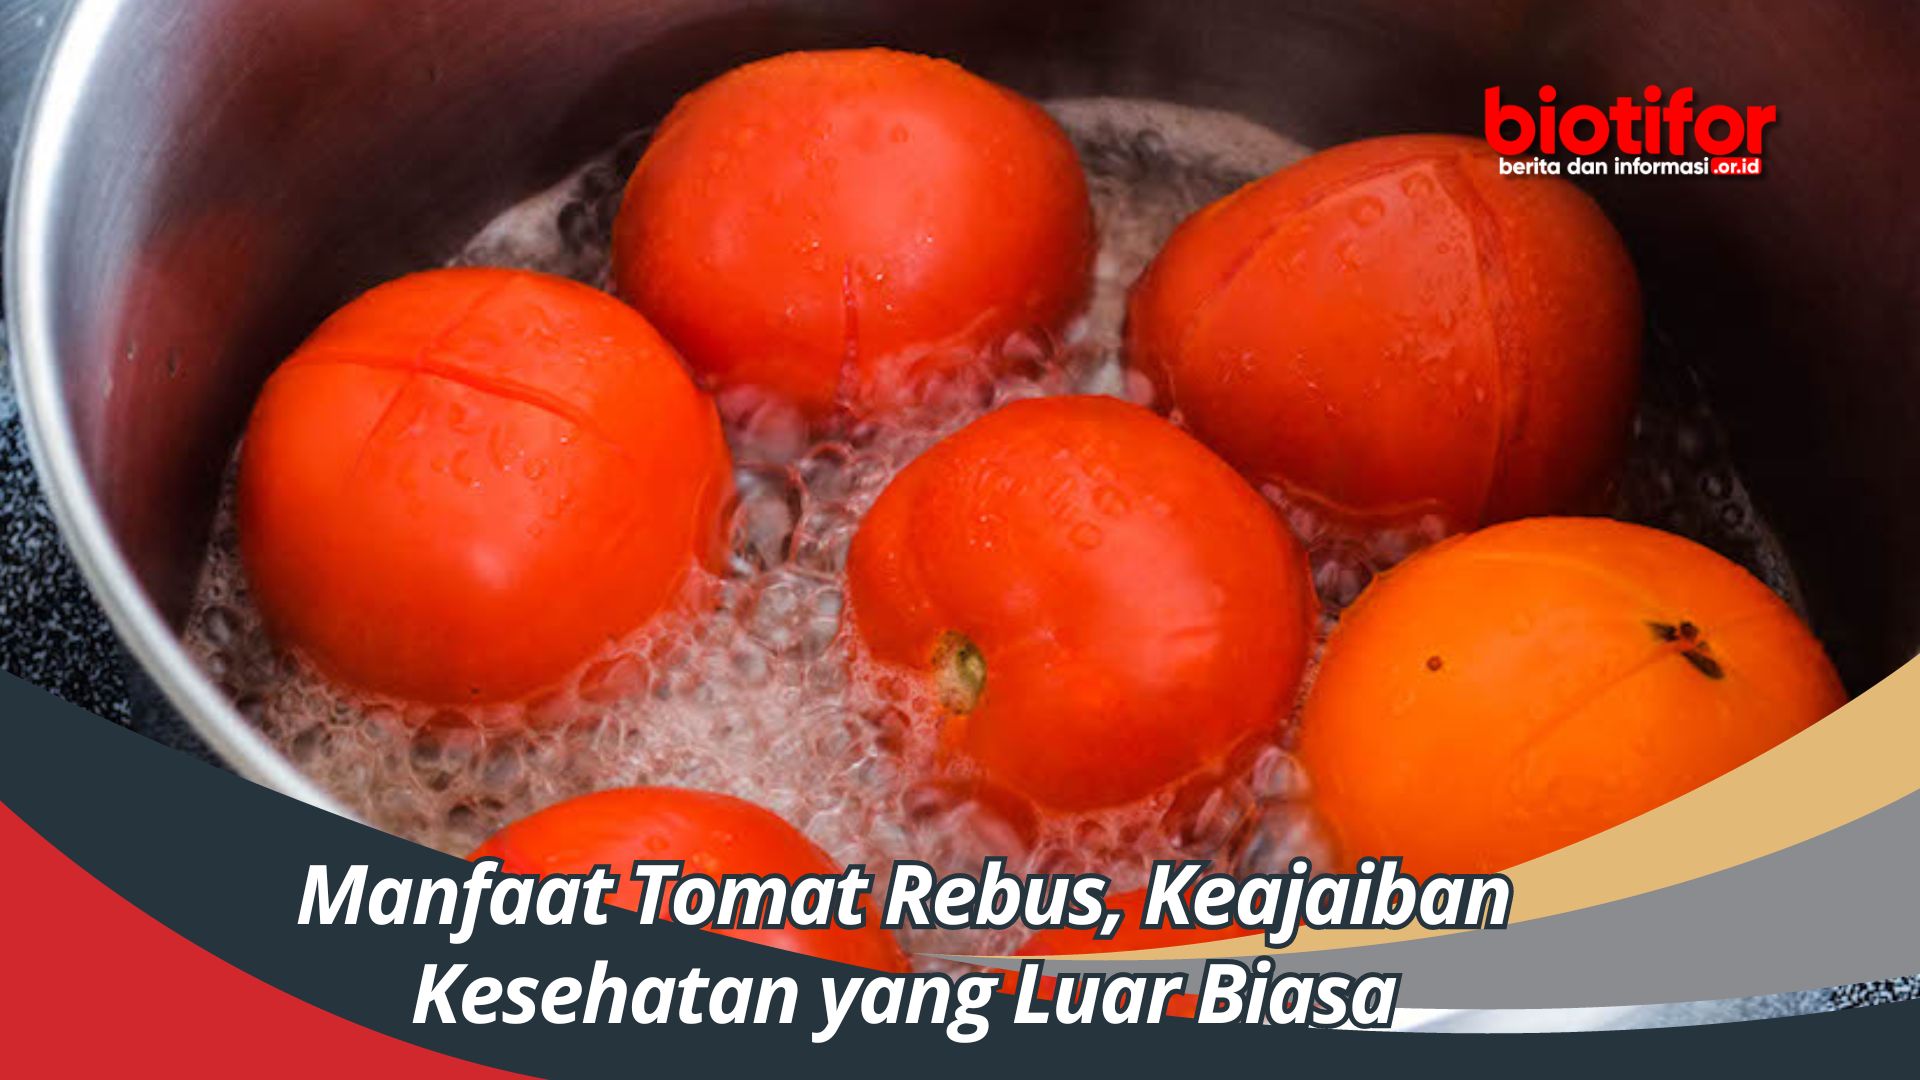 Manfaat Tomat Rebus, Keajaiban Kesehatan yang Luar Biasa